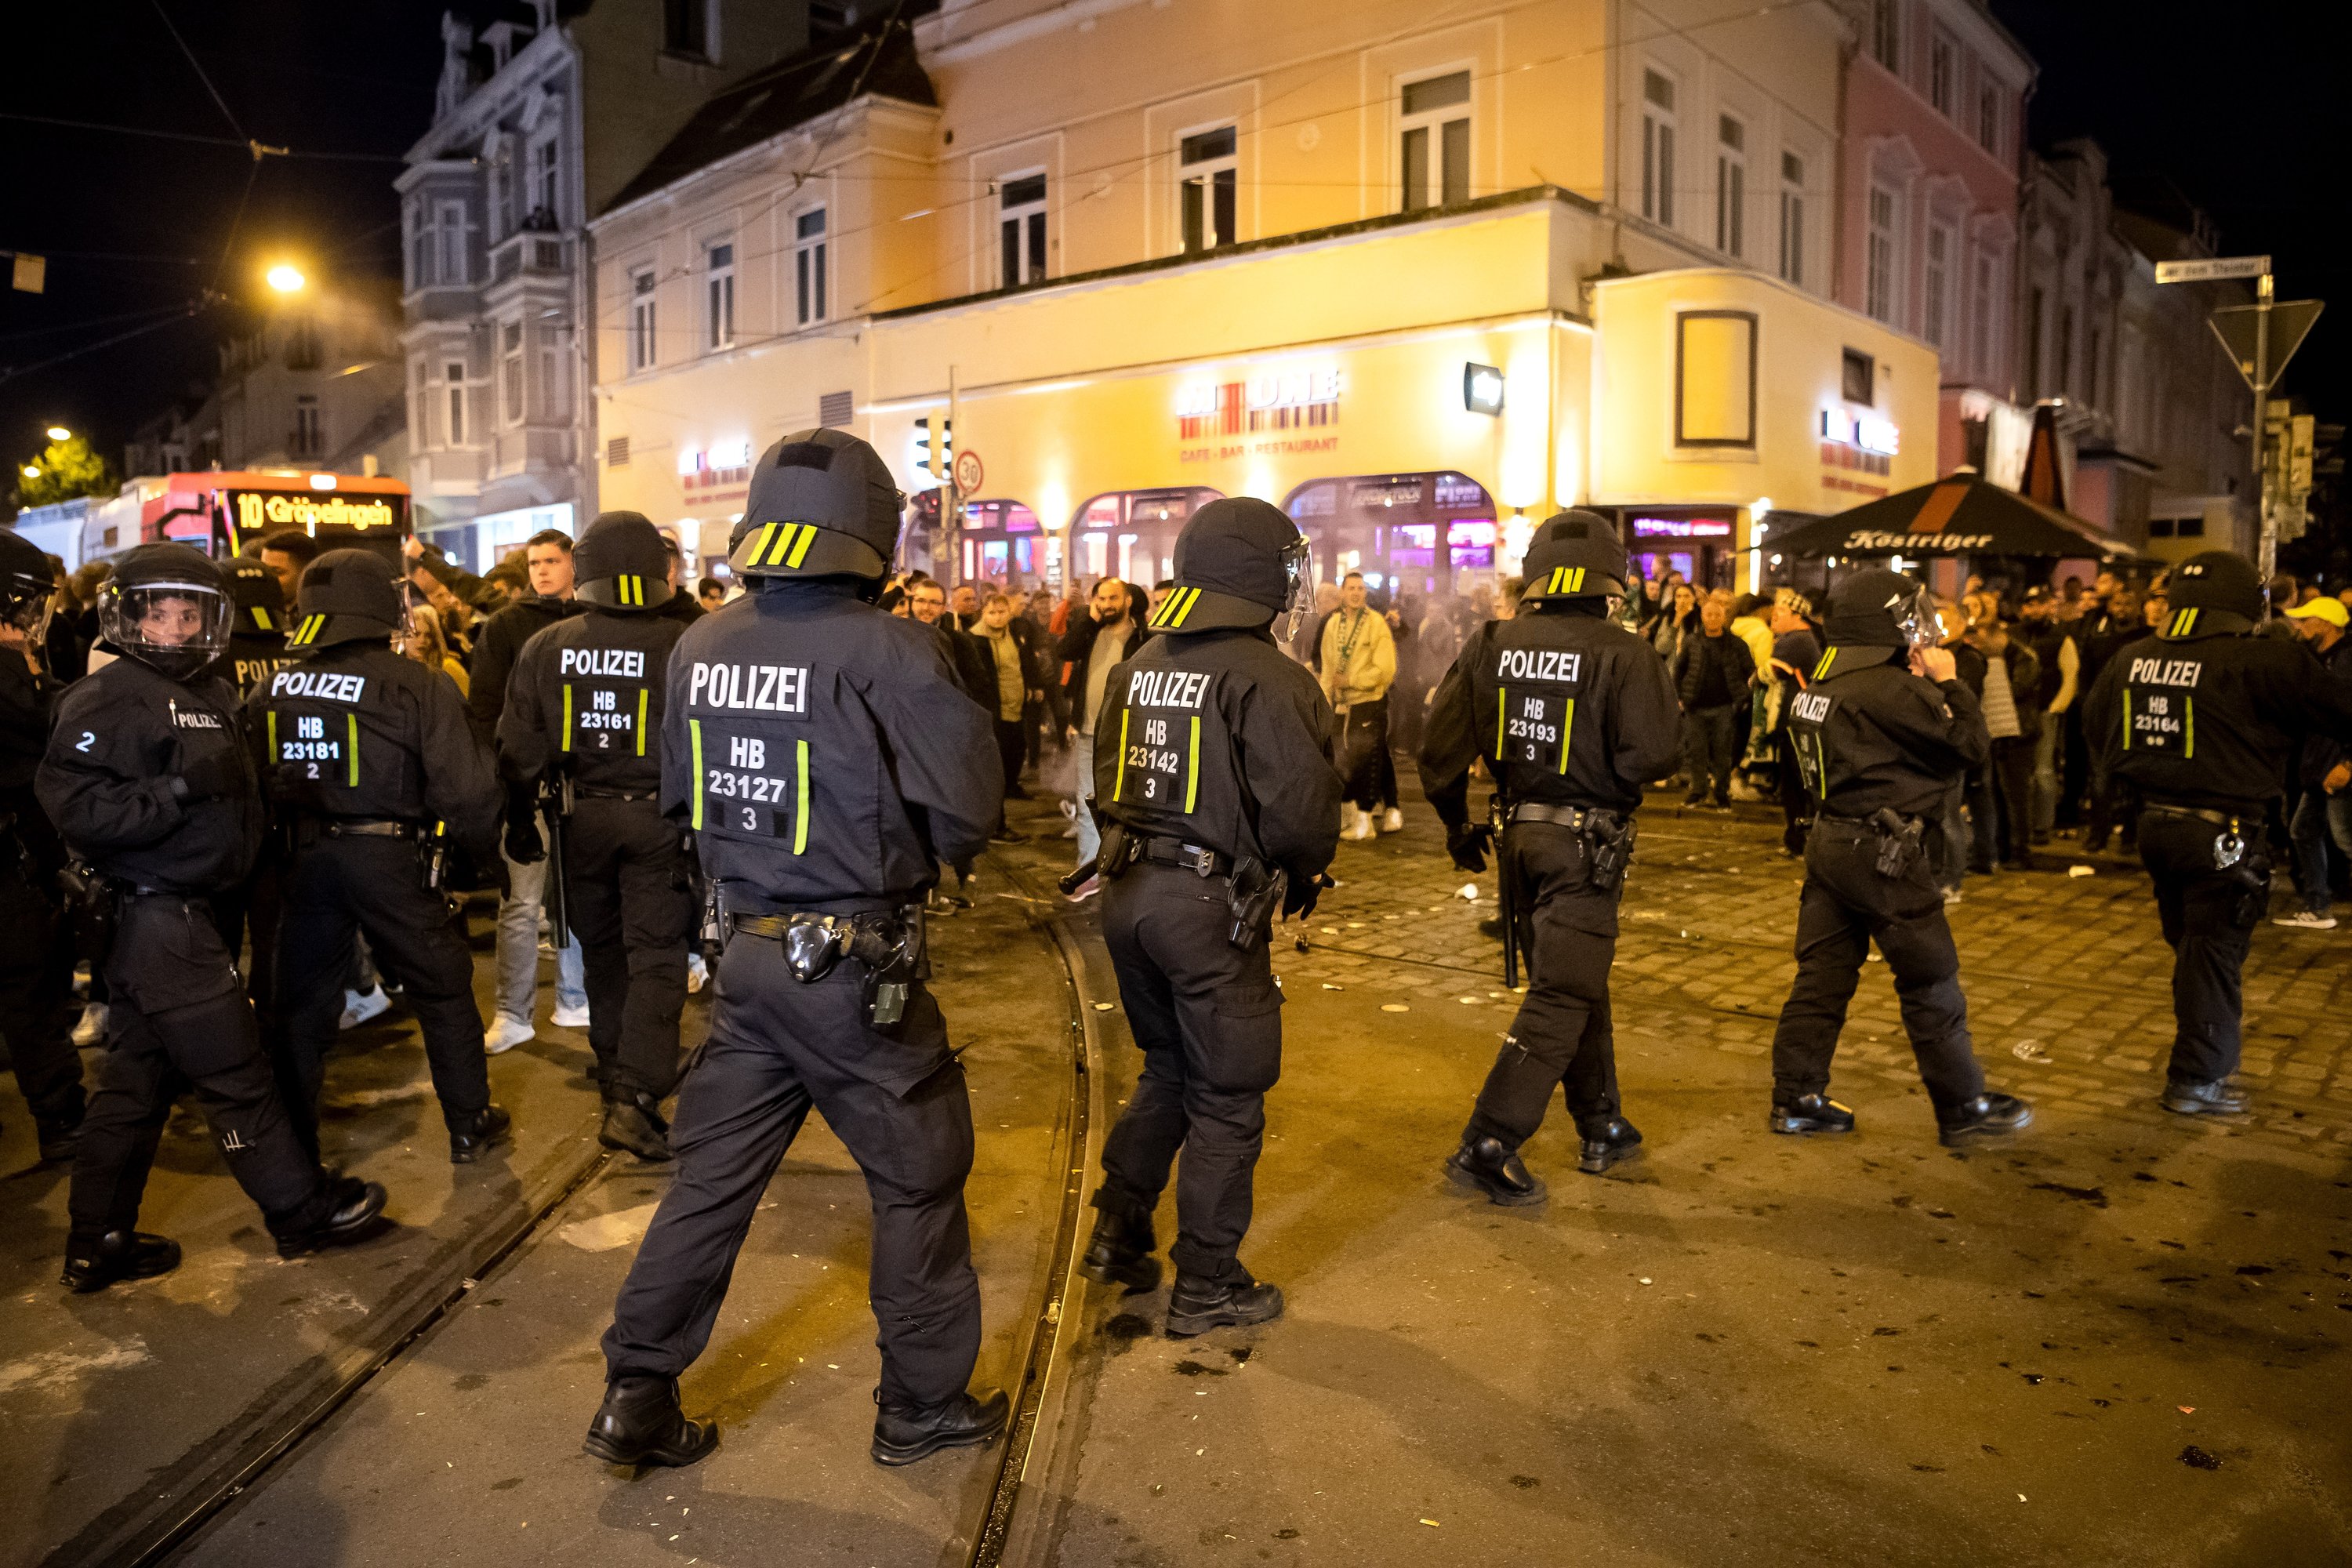 Die Polizei zeigte im Bremer Viertel massive Präsenz. Foto: dpa/Schuldt